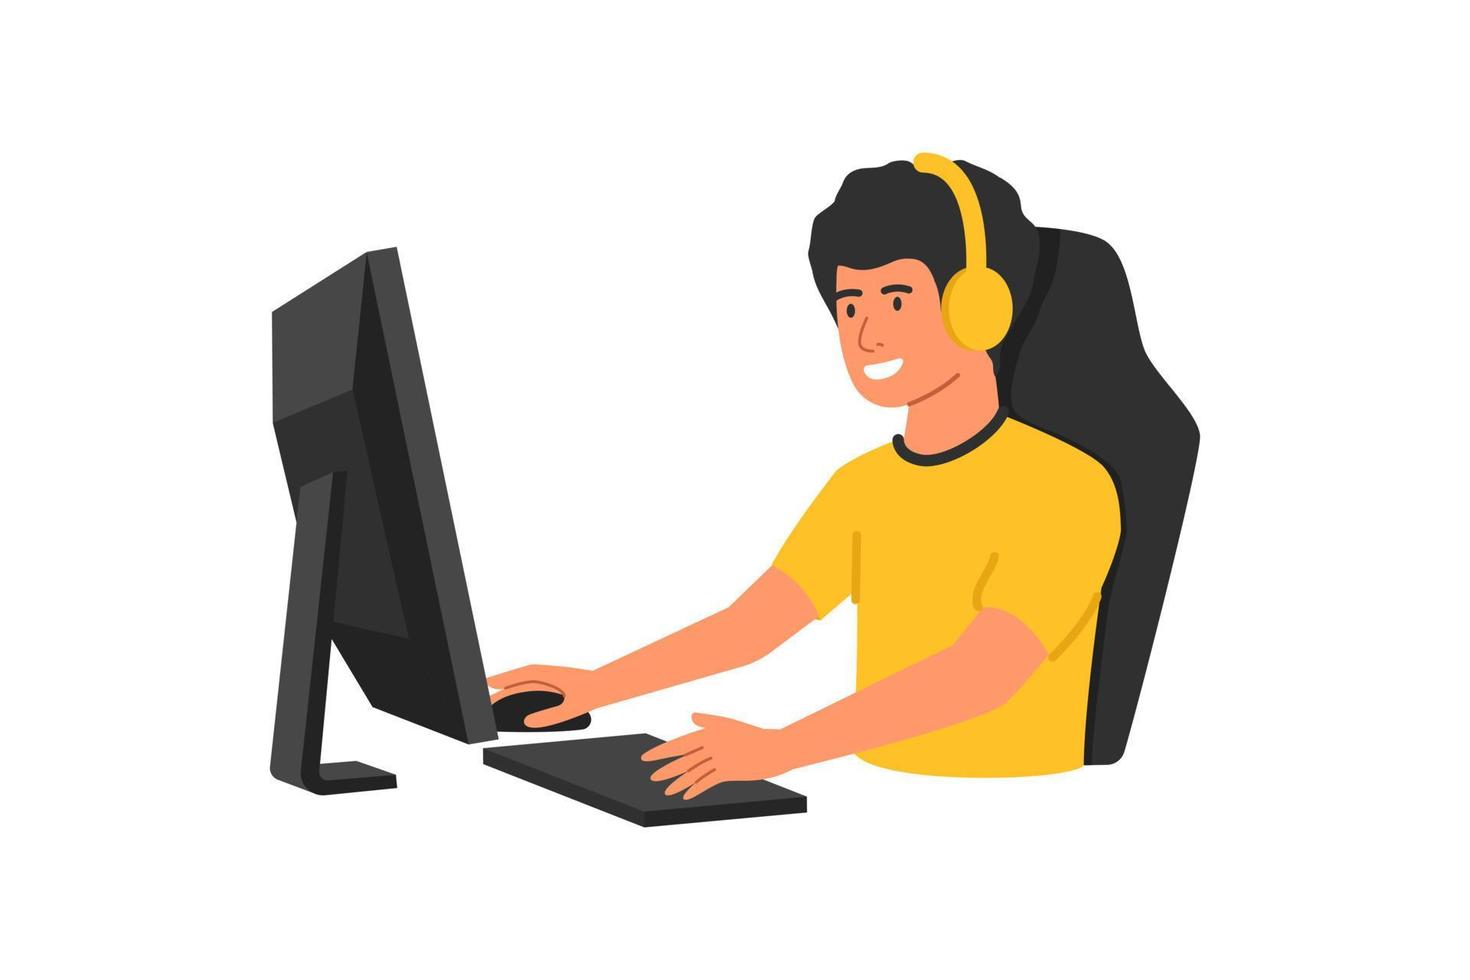 pro gamer joga no videogame online, nos fones de ouvido e com o mouse e teclado do computador. desenho animado conceito pro gamer esport vetor